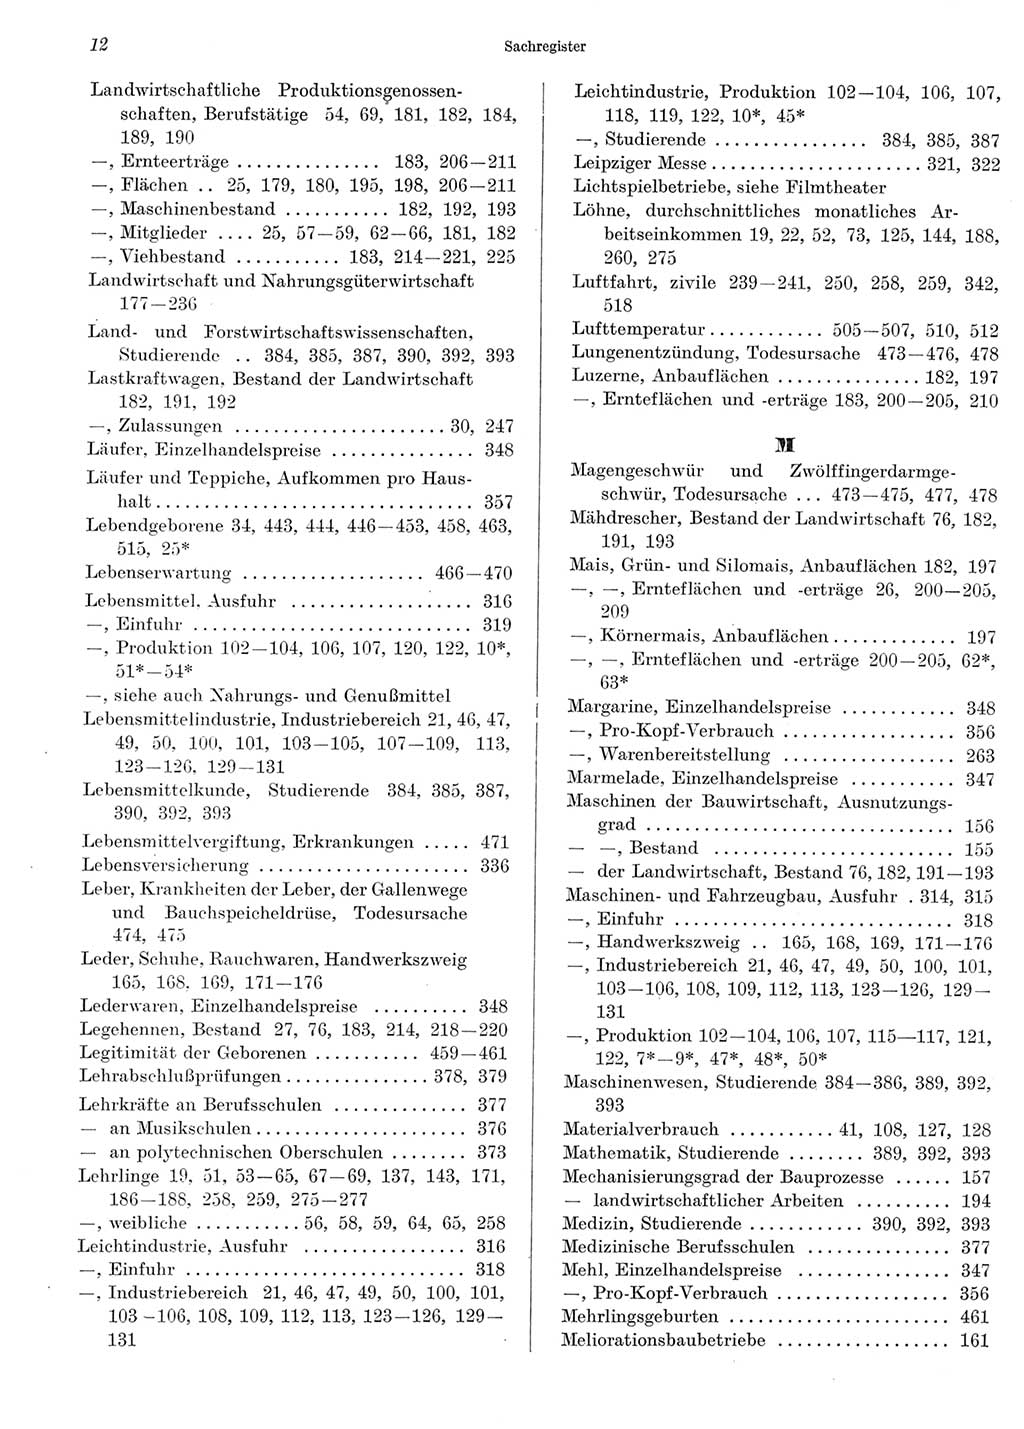 Statistisches Jahrbuch der Deutschen Demokratischen Republik (DDR) 1969, Seite 12 (Stat. Jb. DDR 1969, S. 12)